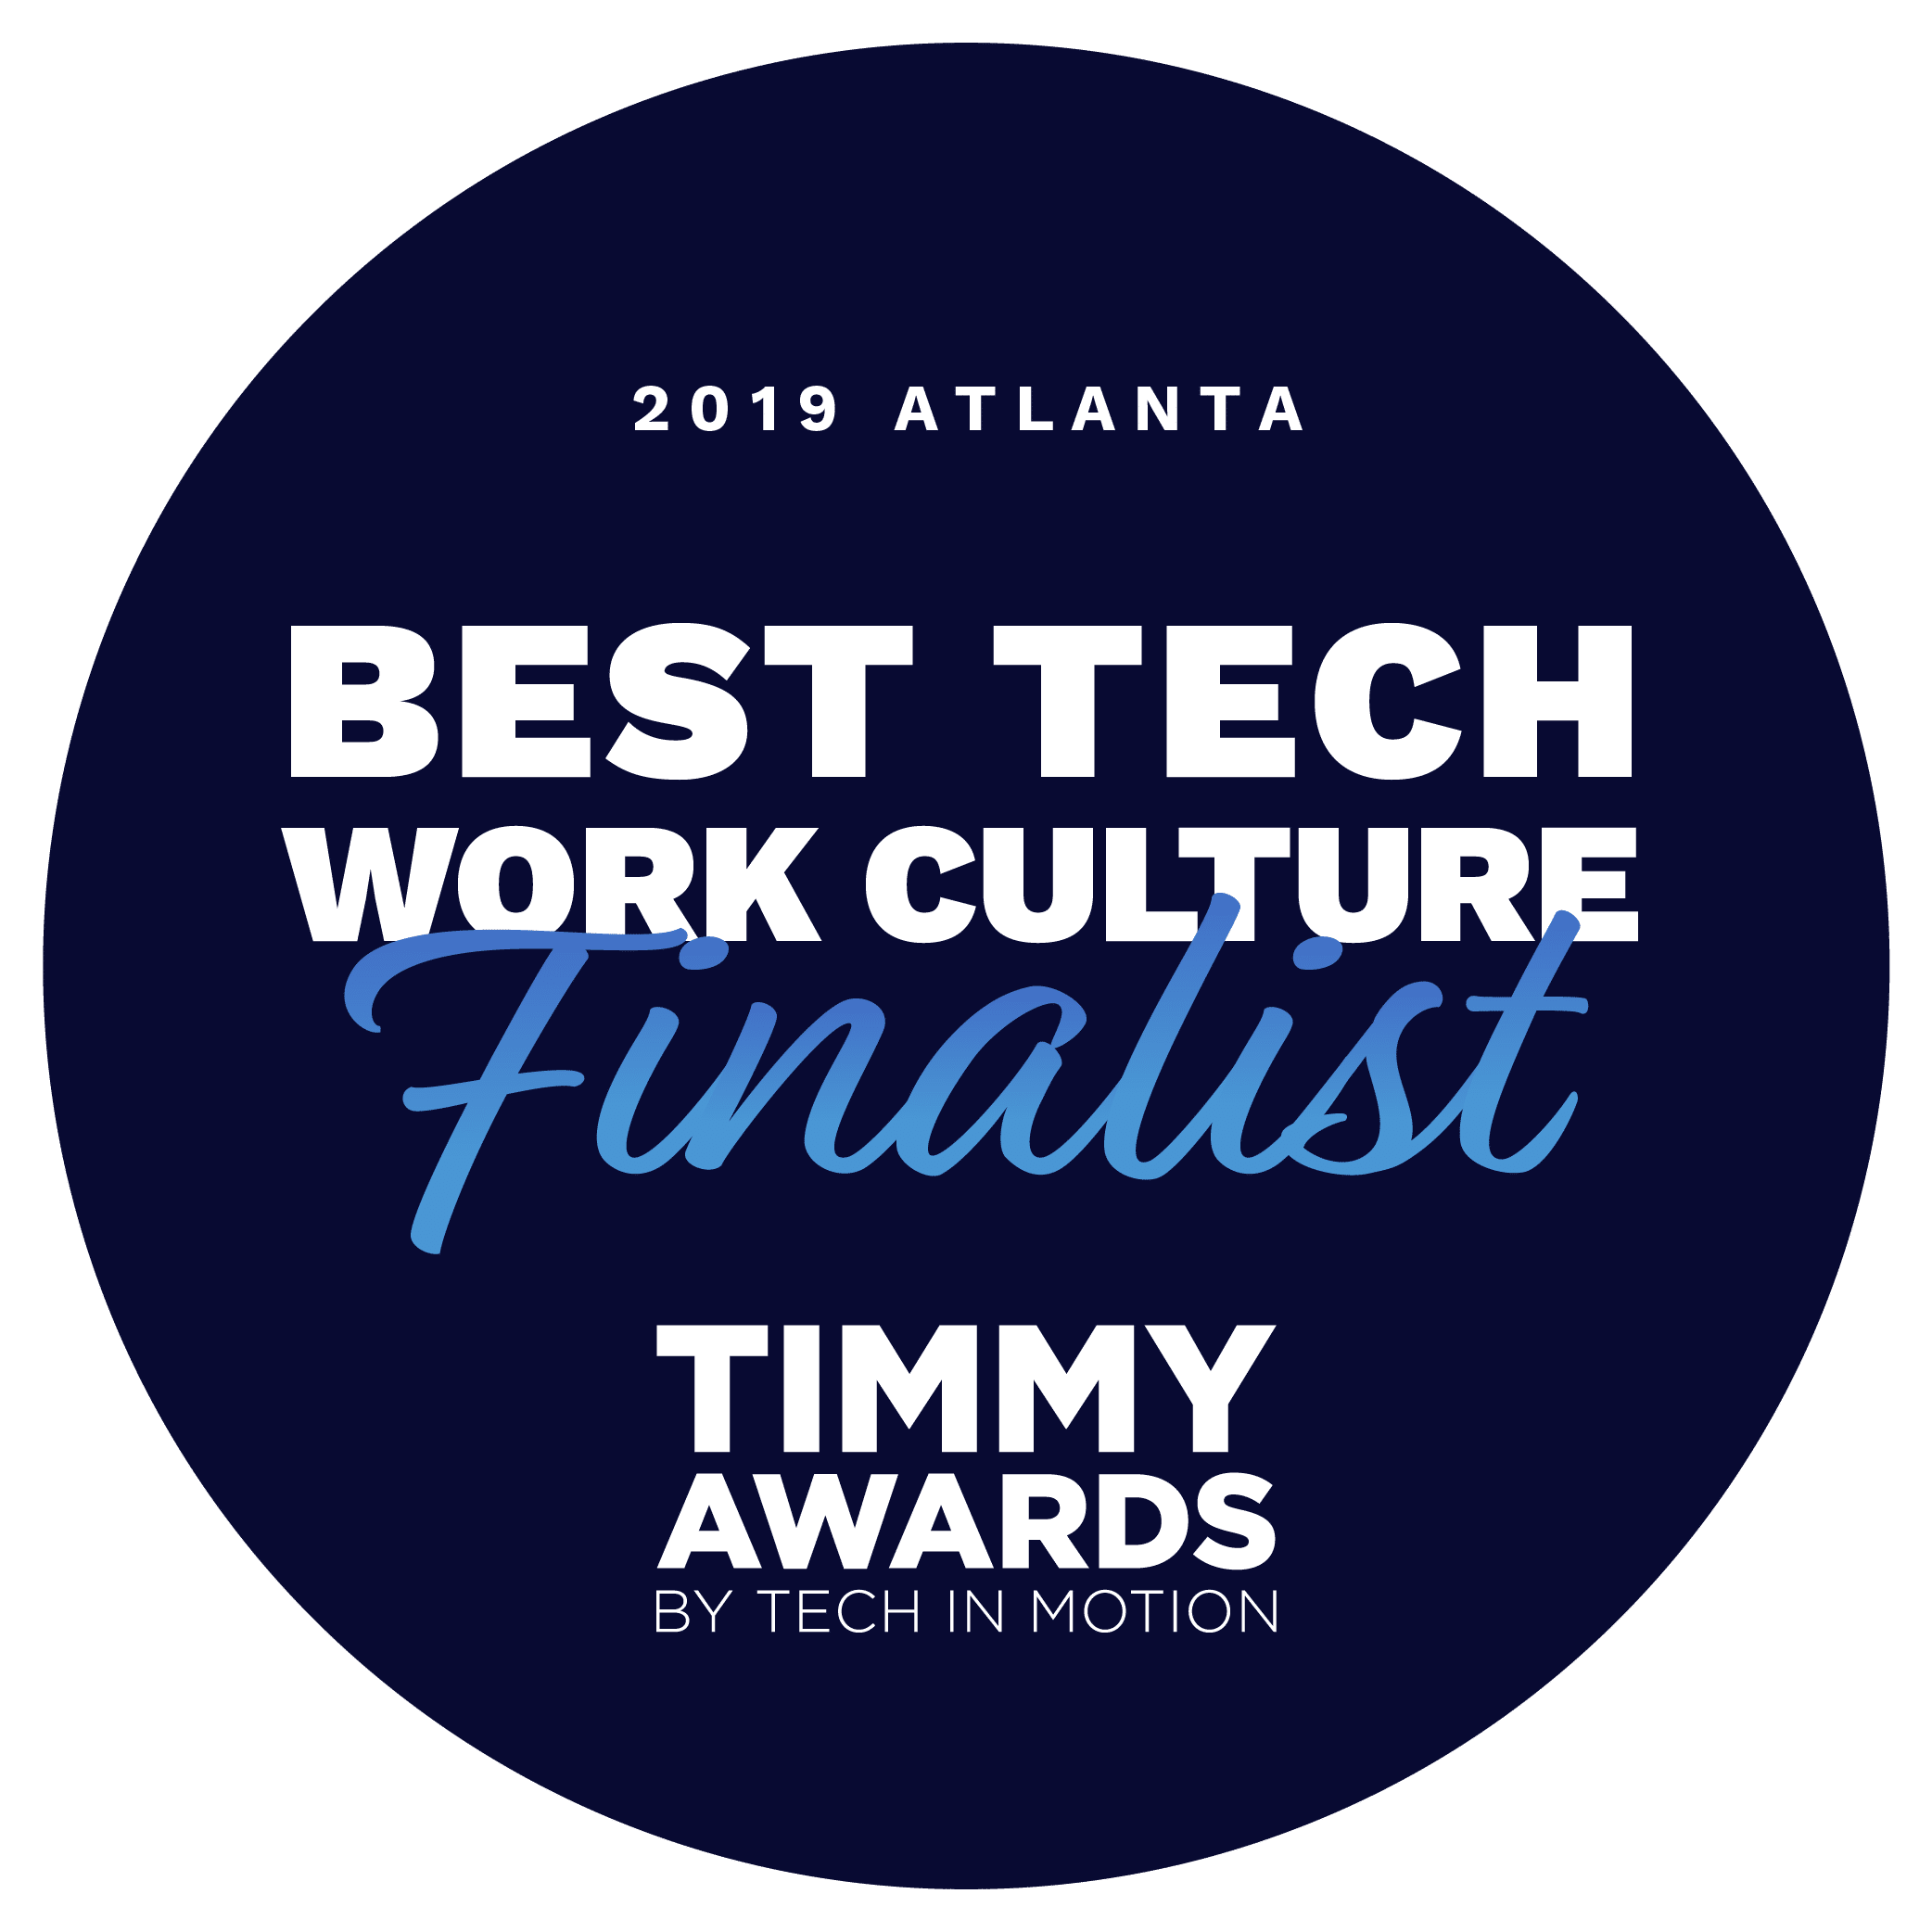 AnalyticsIQ Chosen as Best Tech Work Culture Finalist in Timmy Awards